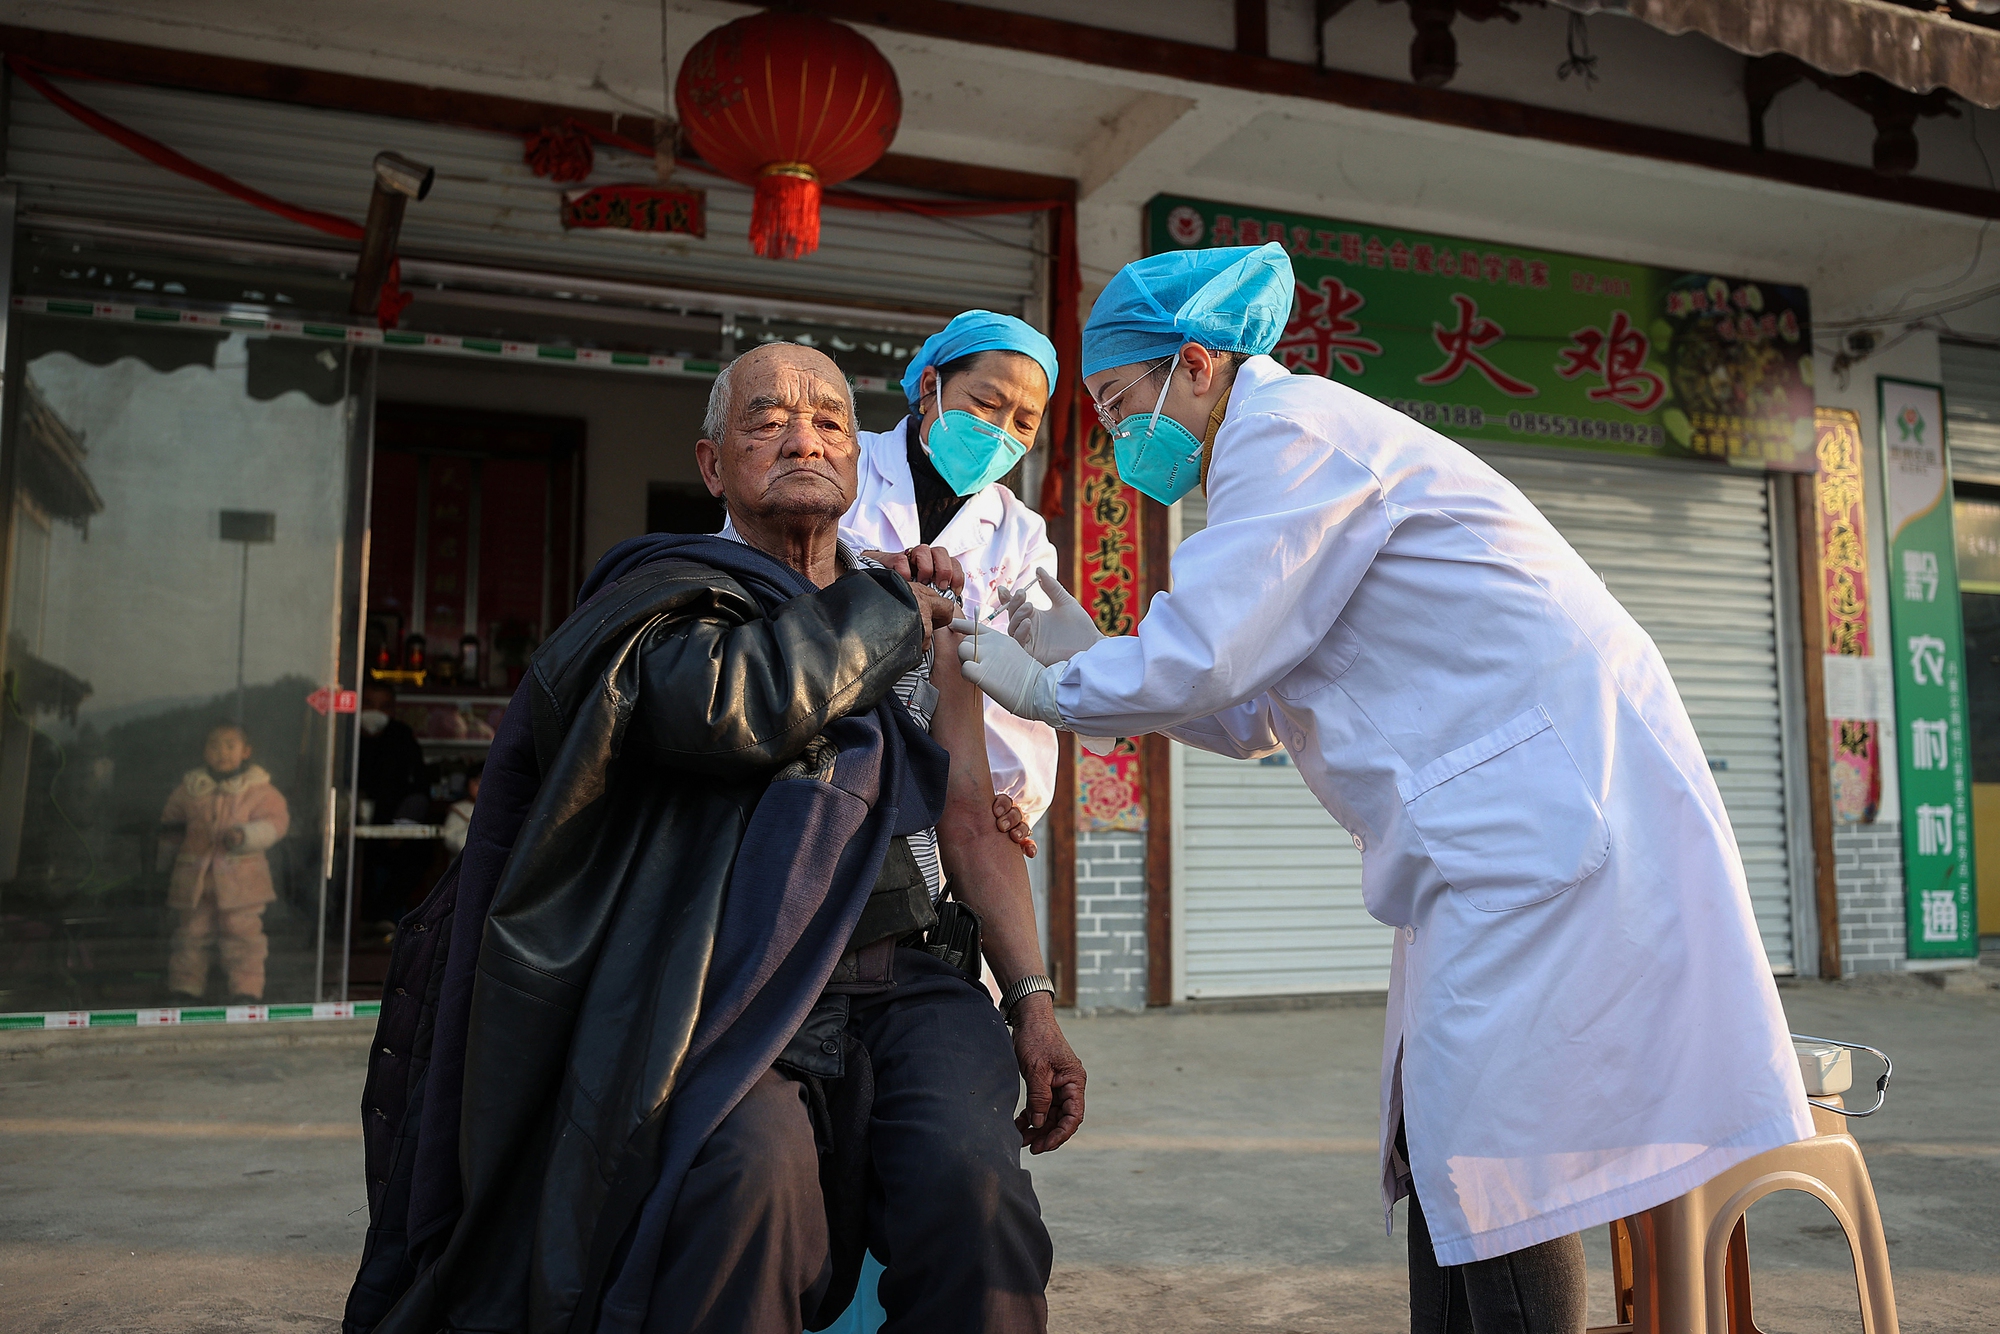 Trung Quốc ghi nhận 2 ca tử vong do COVID-19 sau 3 tuần nới lỏng chống dịch - Ảnh 2.